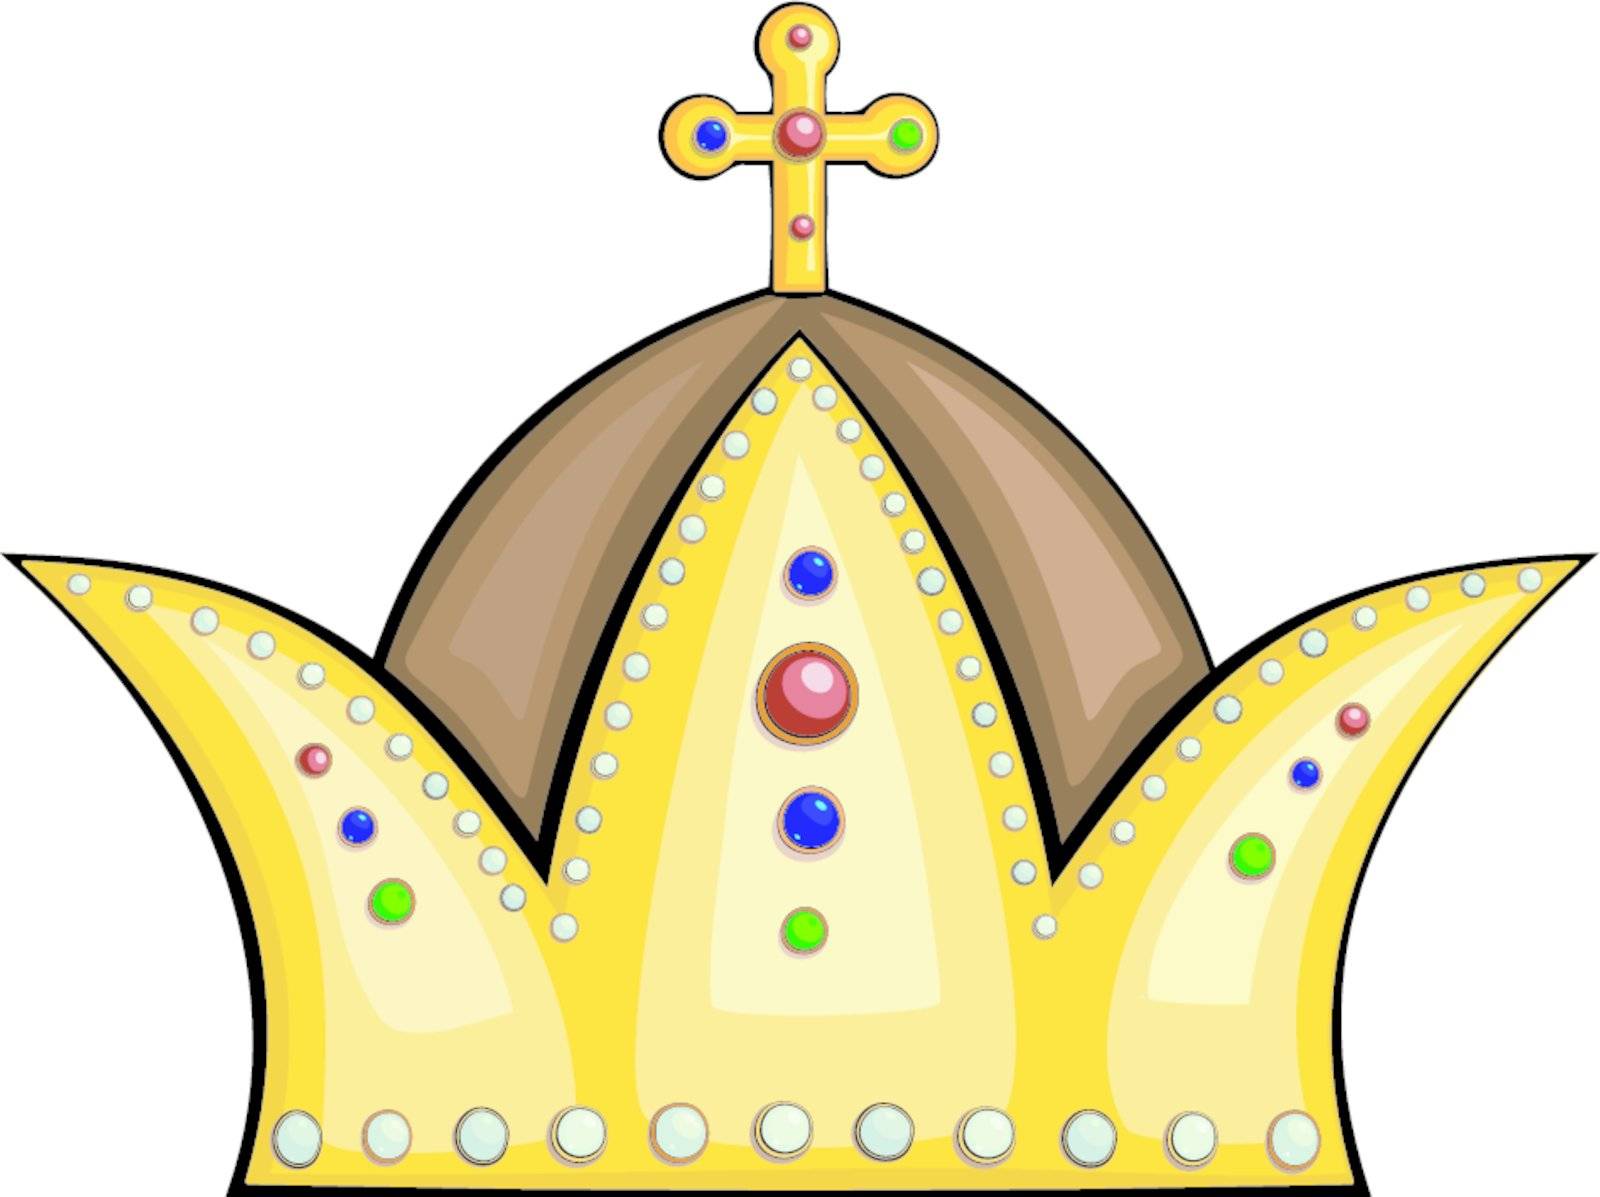 Royal crown by Larser